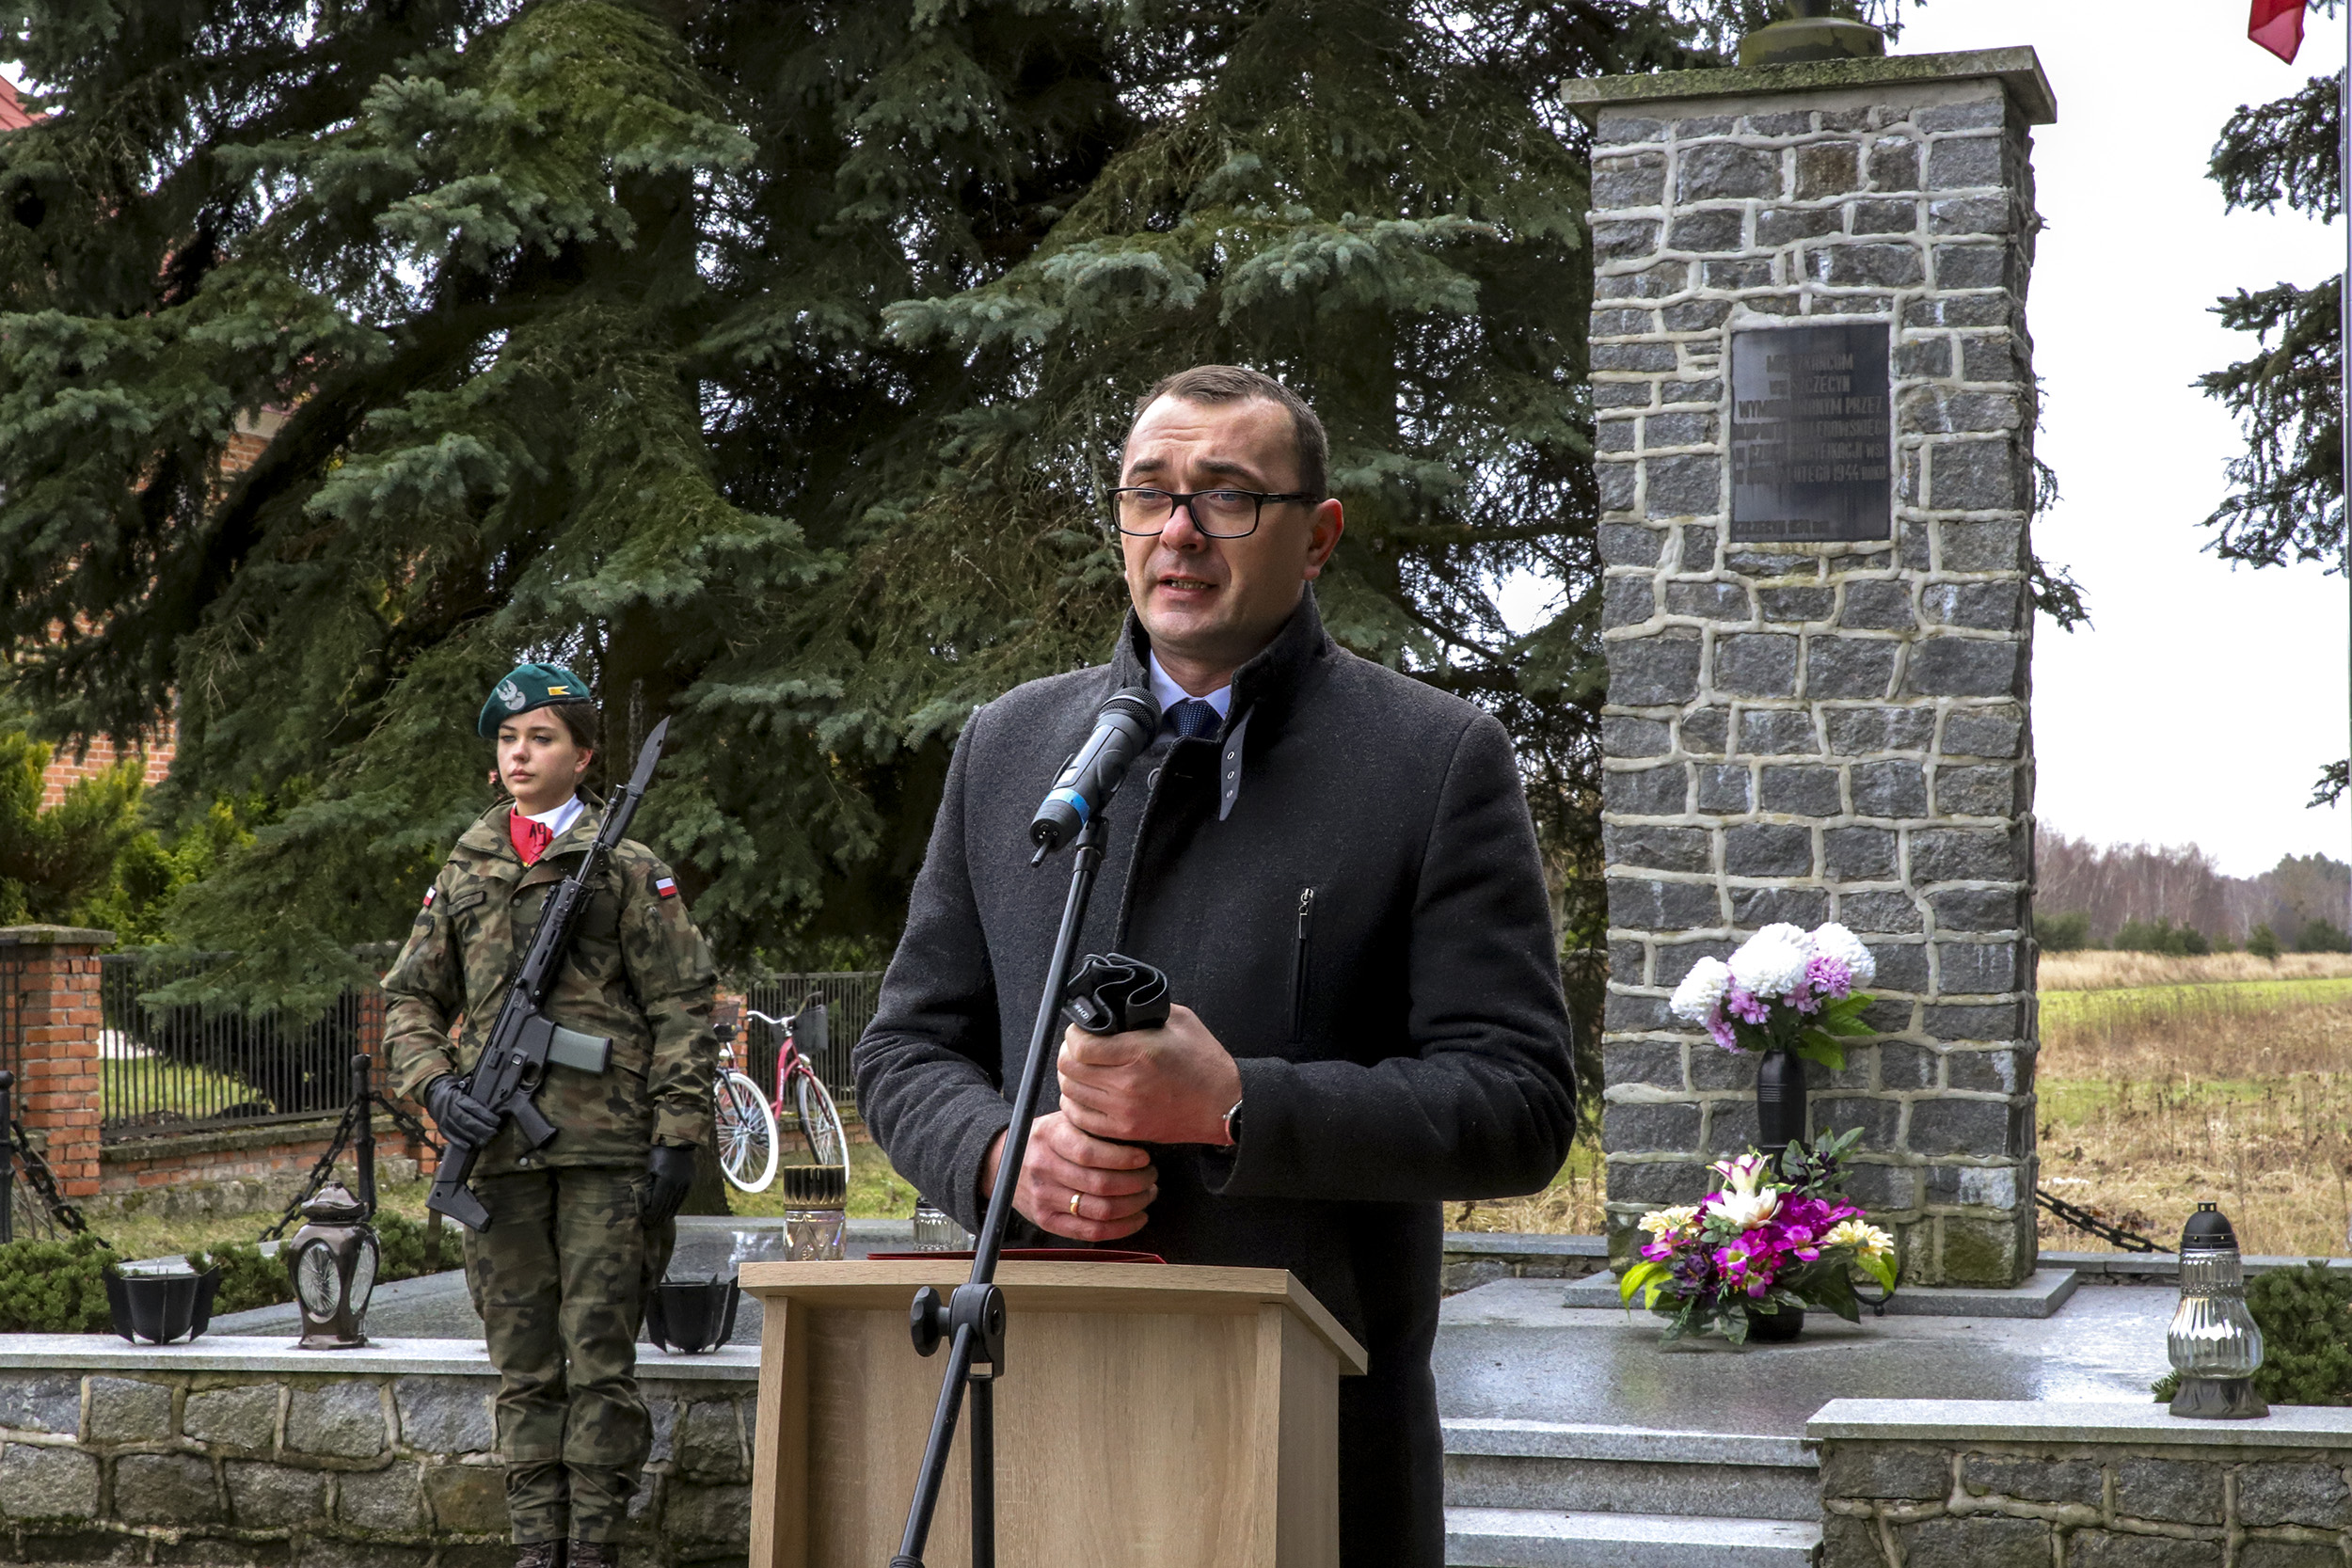 Na zdjęciu Starosta Kraśnicki stojący przy mównicy podczas okolicznościowego przemówienia. W tle za nim znajduje się pomnik upamiętniających pacyfikację z 2 lutego 1944 roku oraz pełniąca staż honorową żołnierka. 